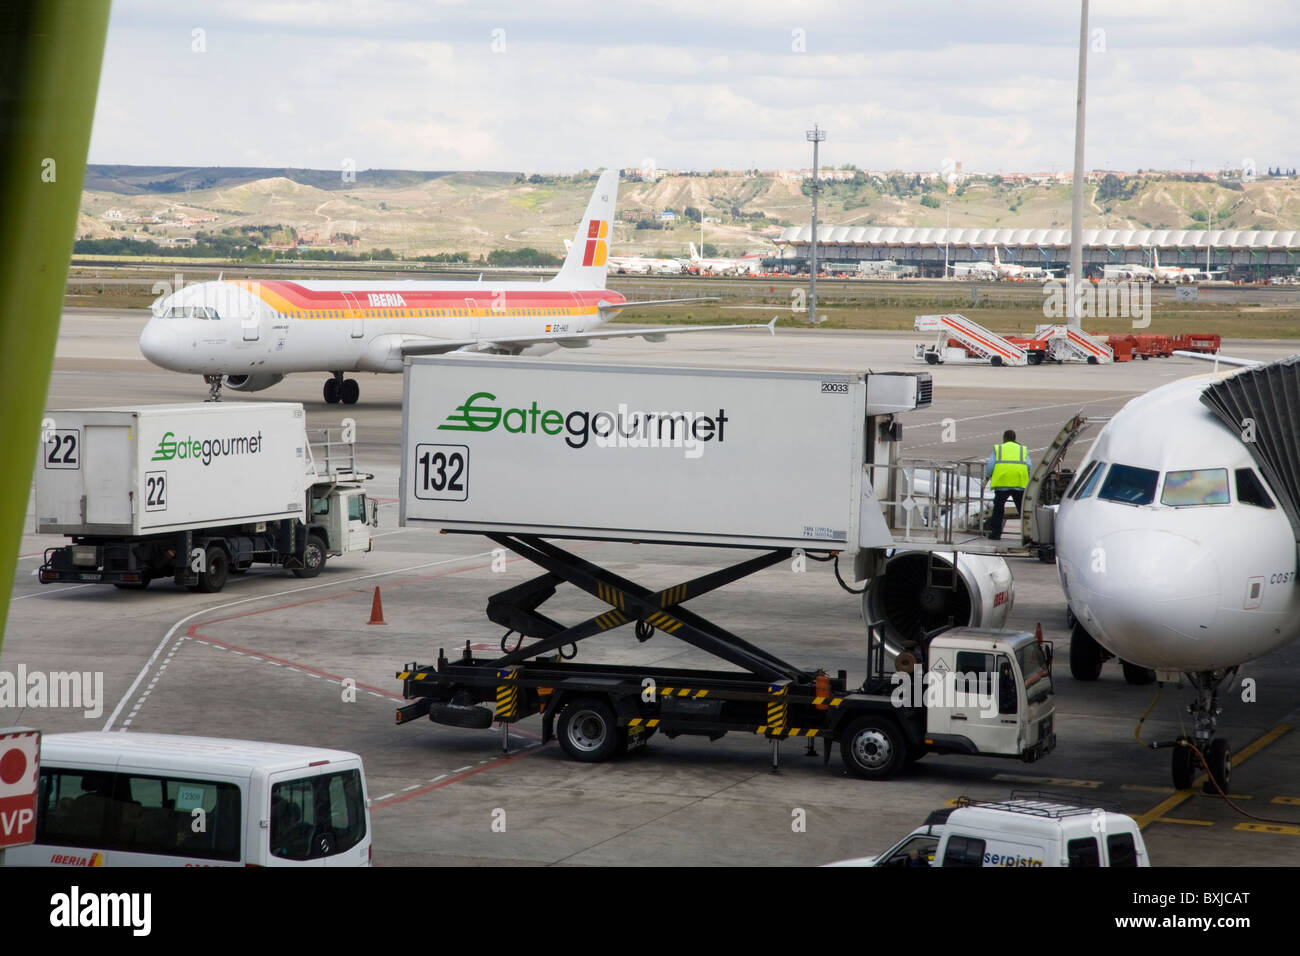 Gate Gourmet Airline-catering-Versorgung der Verladung in ein Flugzeug / Flug am Flughafen Madrid-Barajas, Spanien. Stockfoto